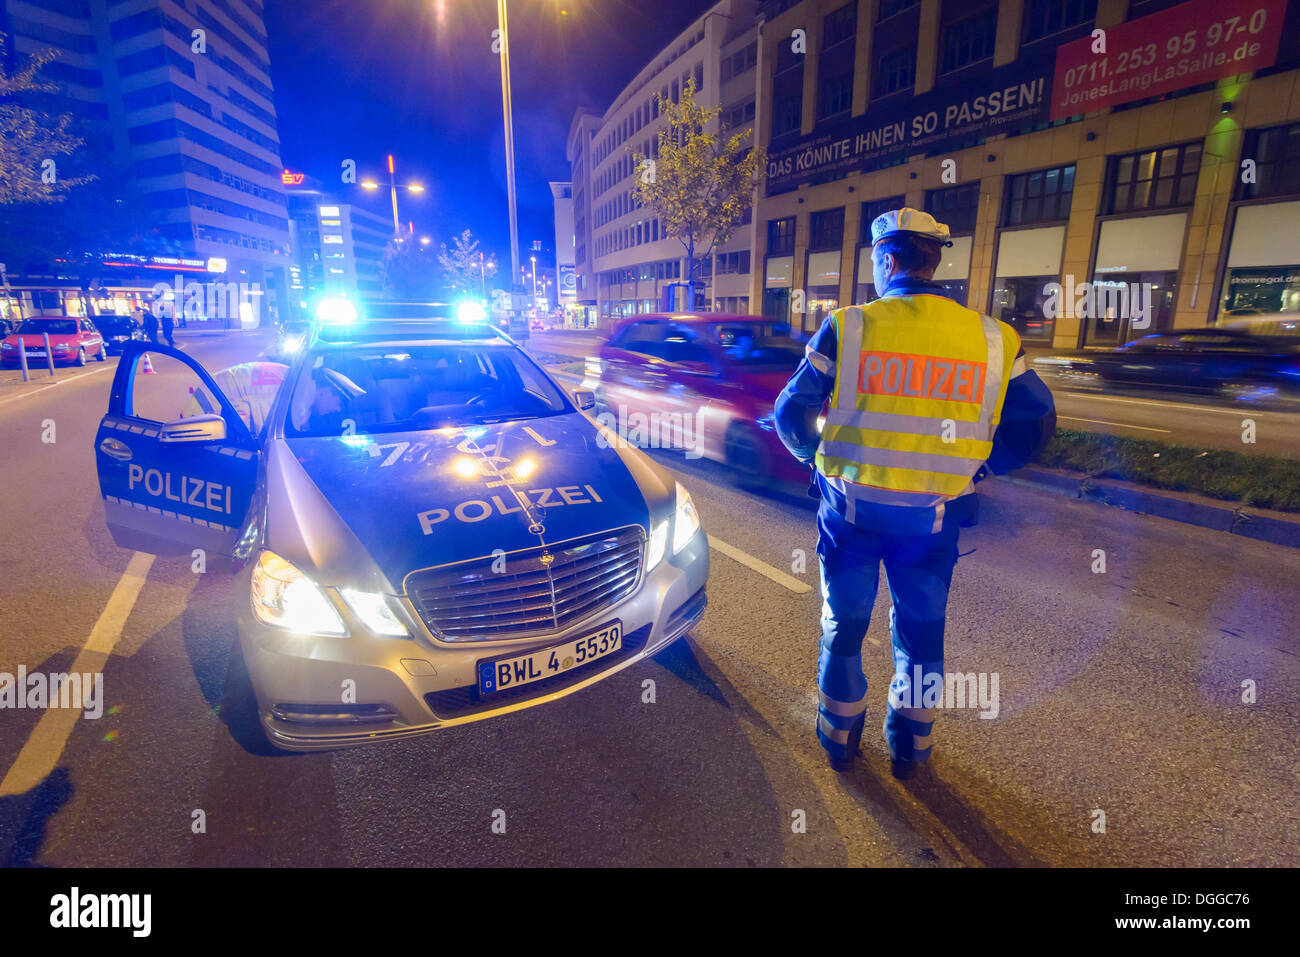 Polizei: Probefahrt mit Blaulicht endet in Polizeikontrolle